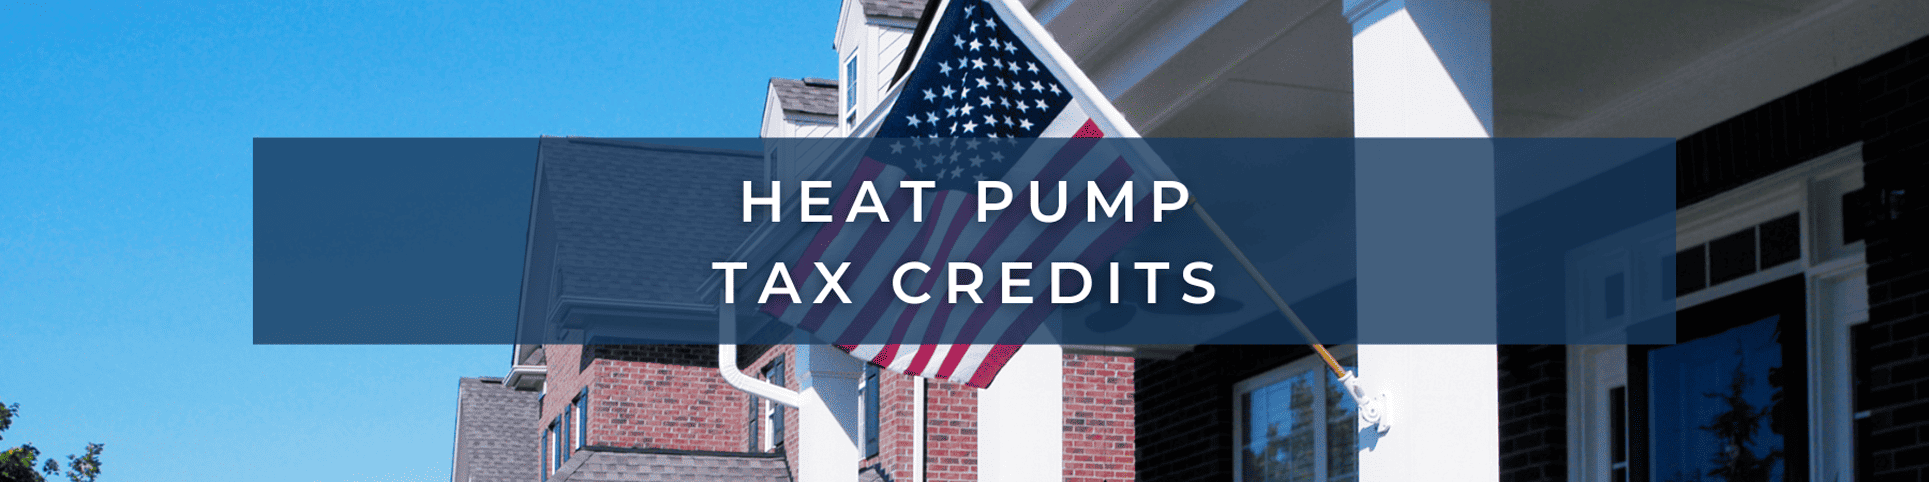 Heat Pump Tax Credits